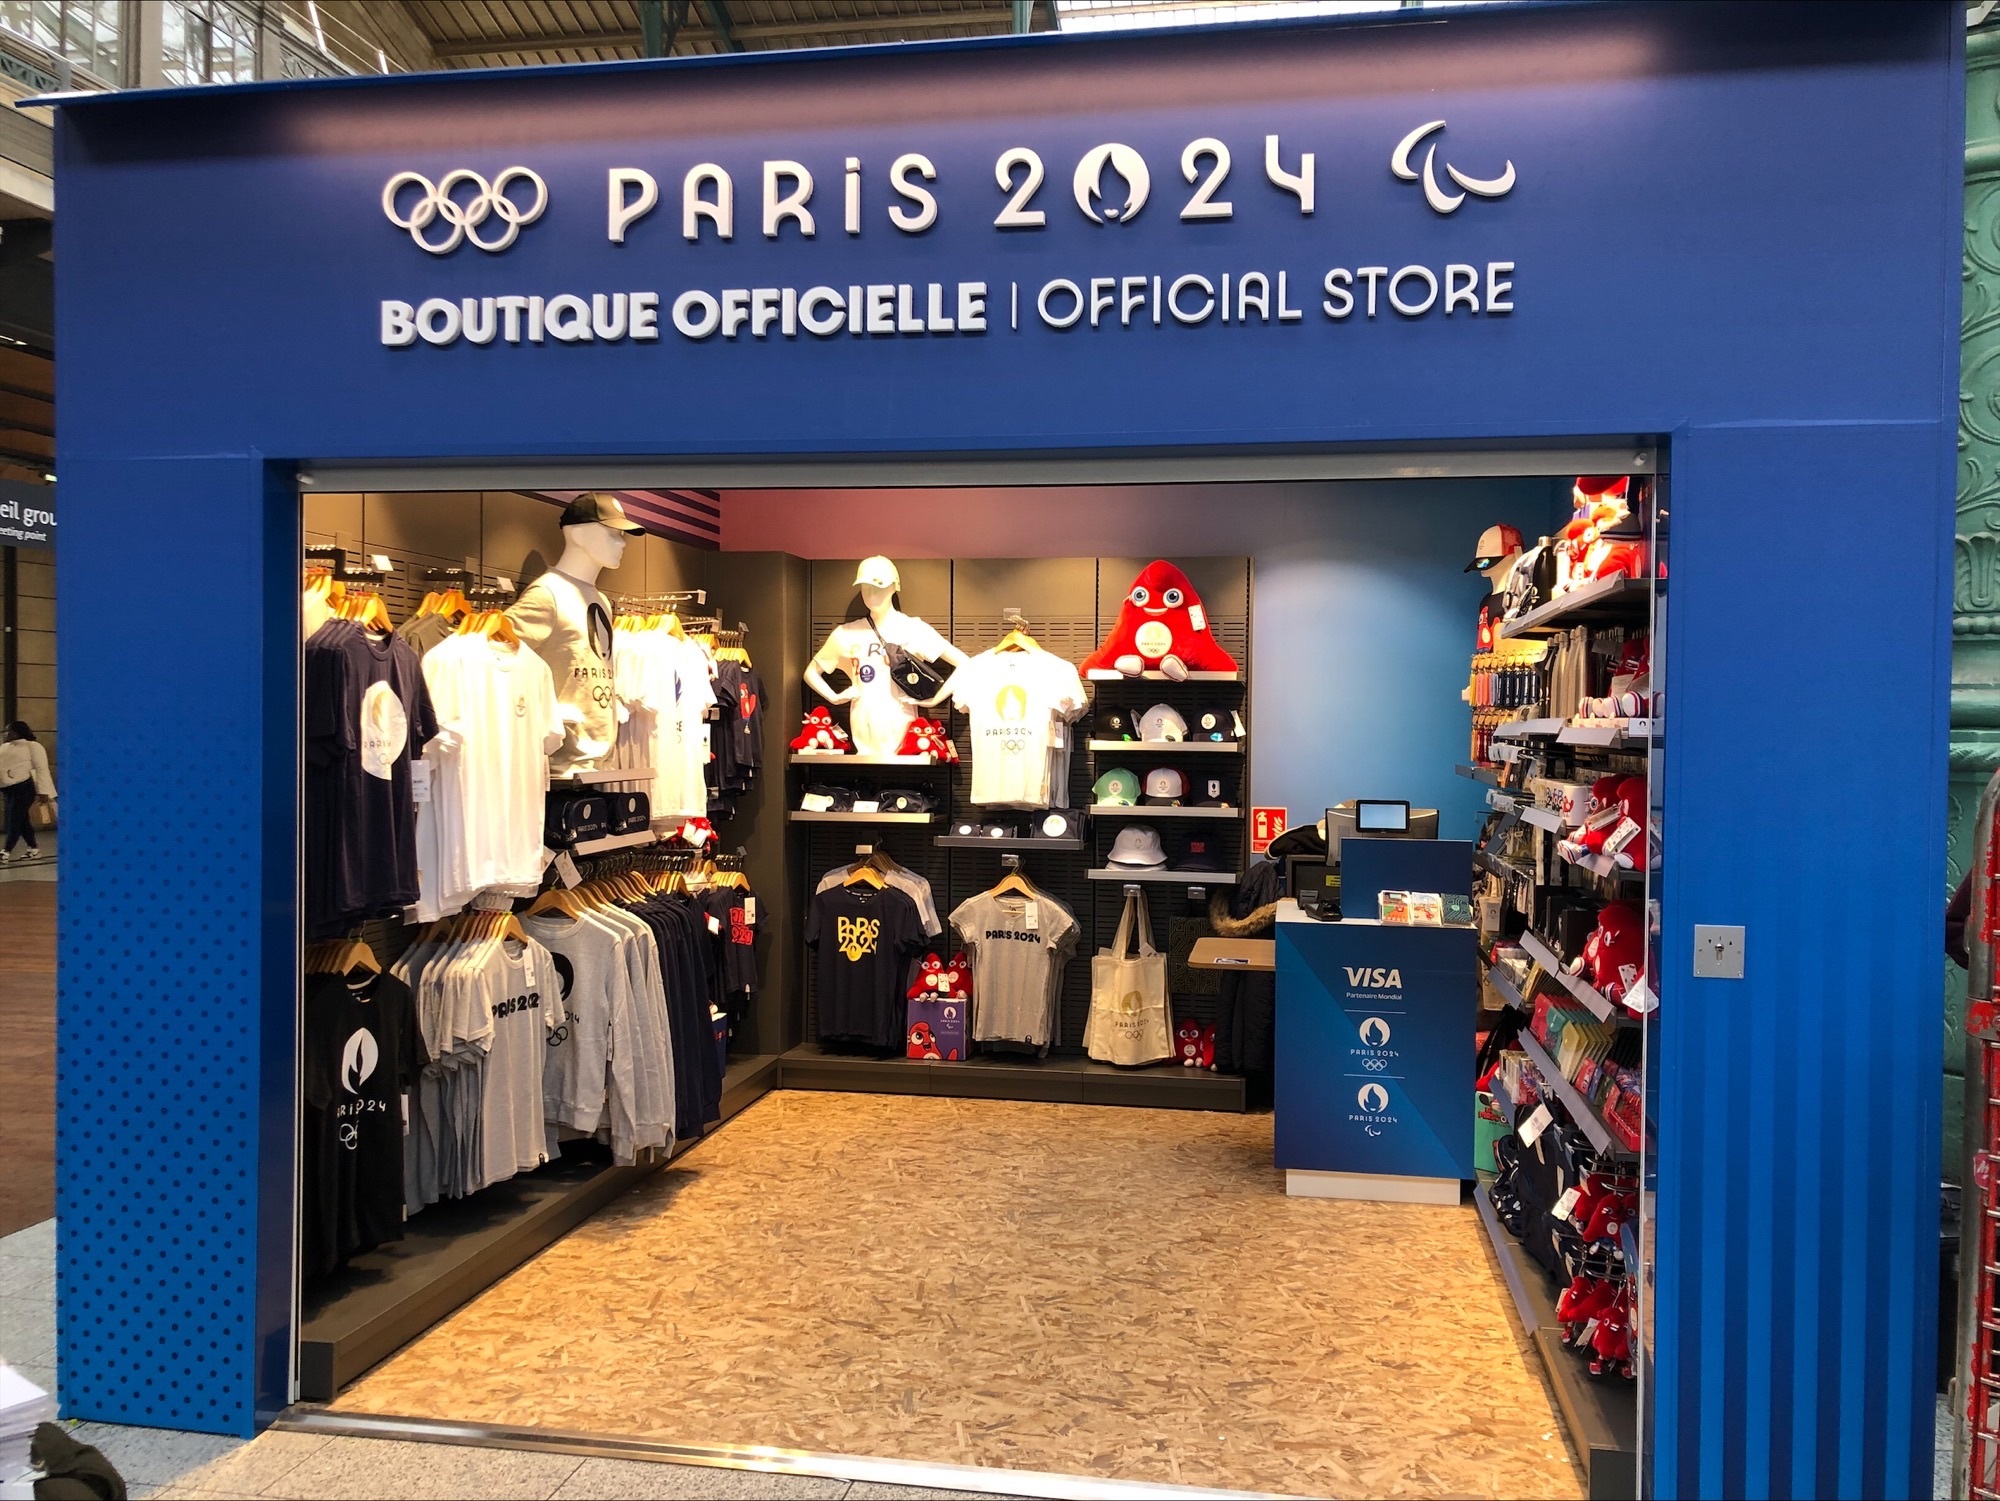 Boutique officielle Paris 2024 Store